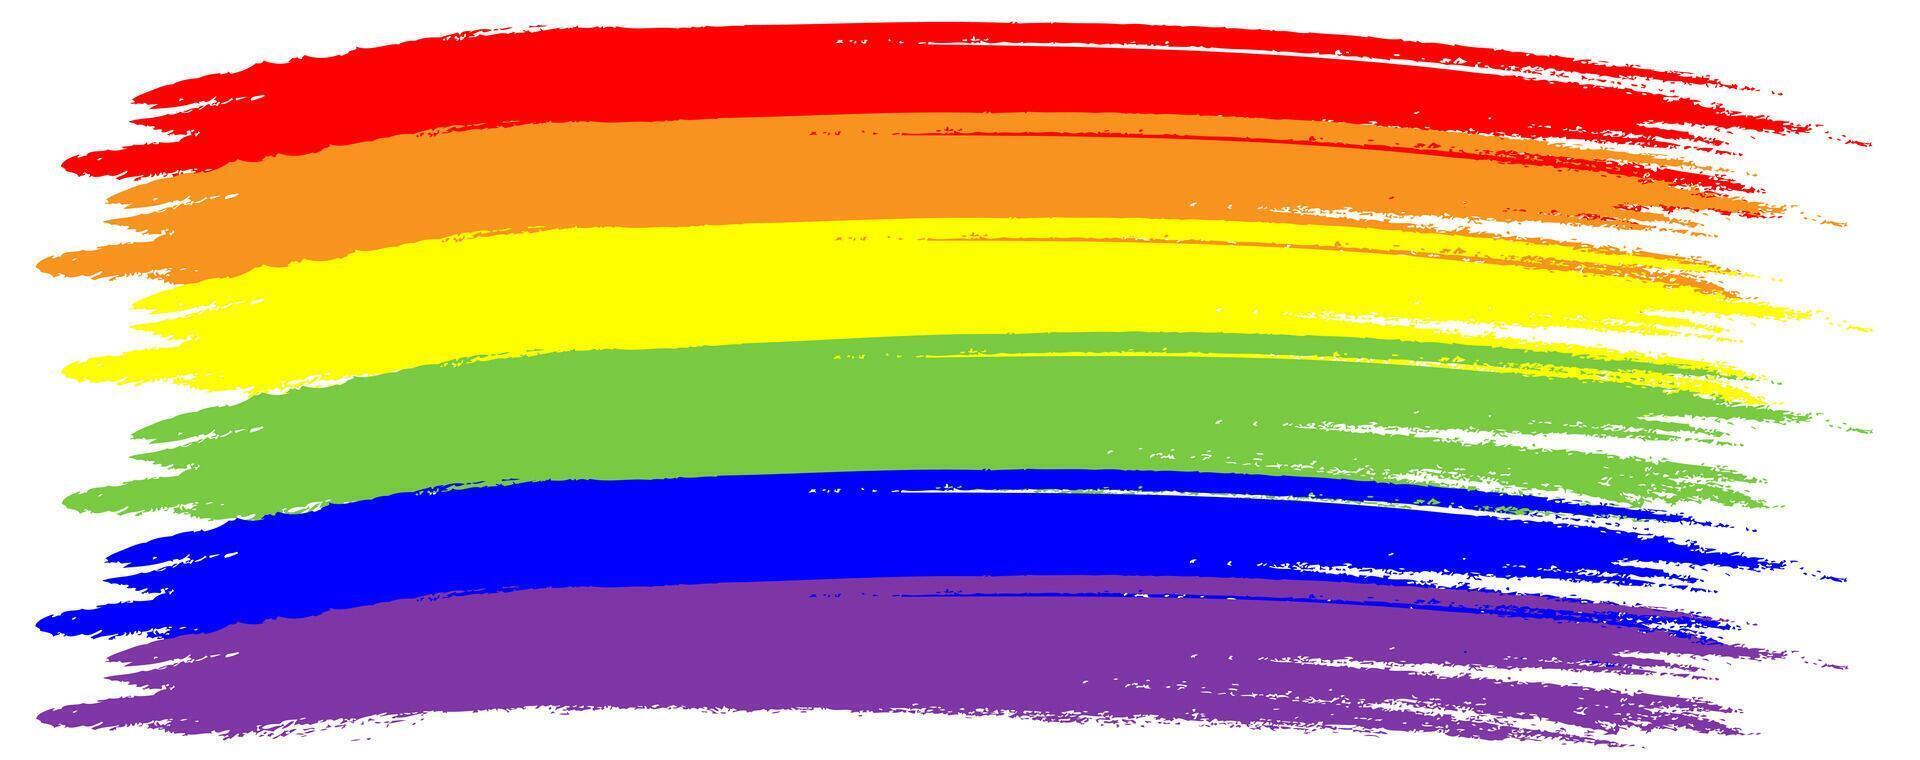 regenboog. imitatie van waterverf. helder vector illustratie.red, oranje, geel, groente, blauw, Purper getextureerde strepen. homo trots lgbt vlag.